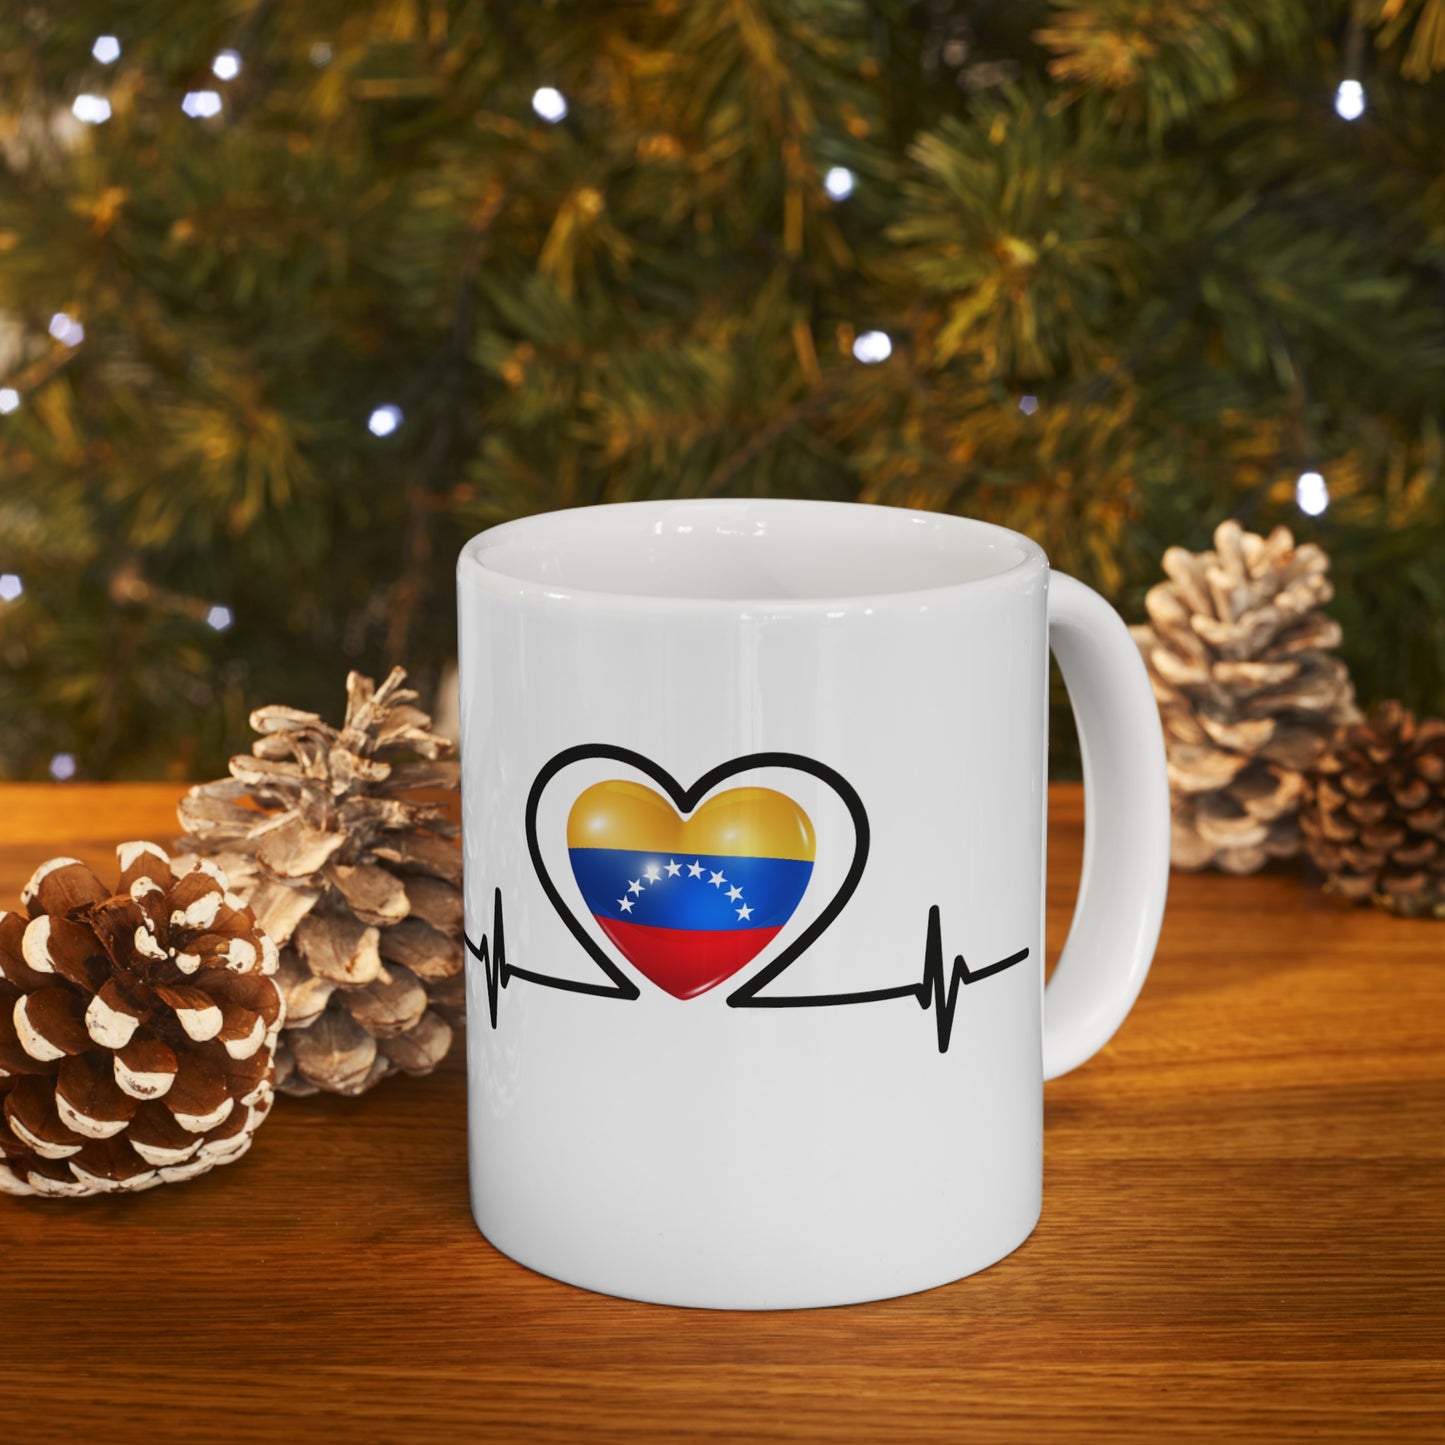 Ceramic Mug 11 oz - Venezuela's flag